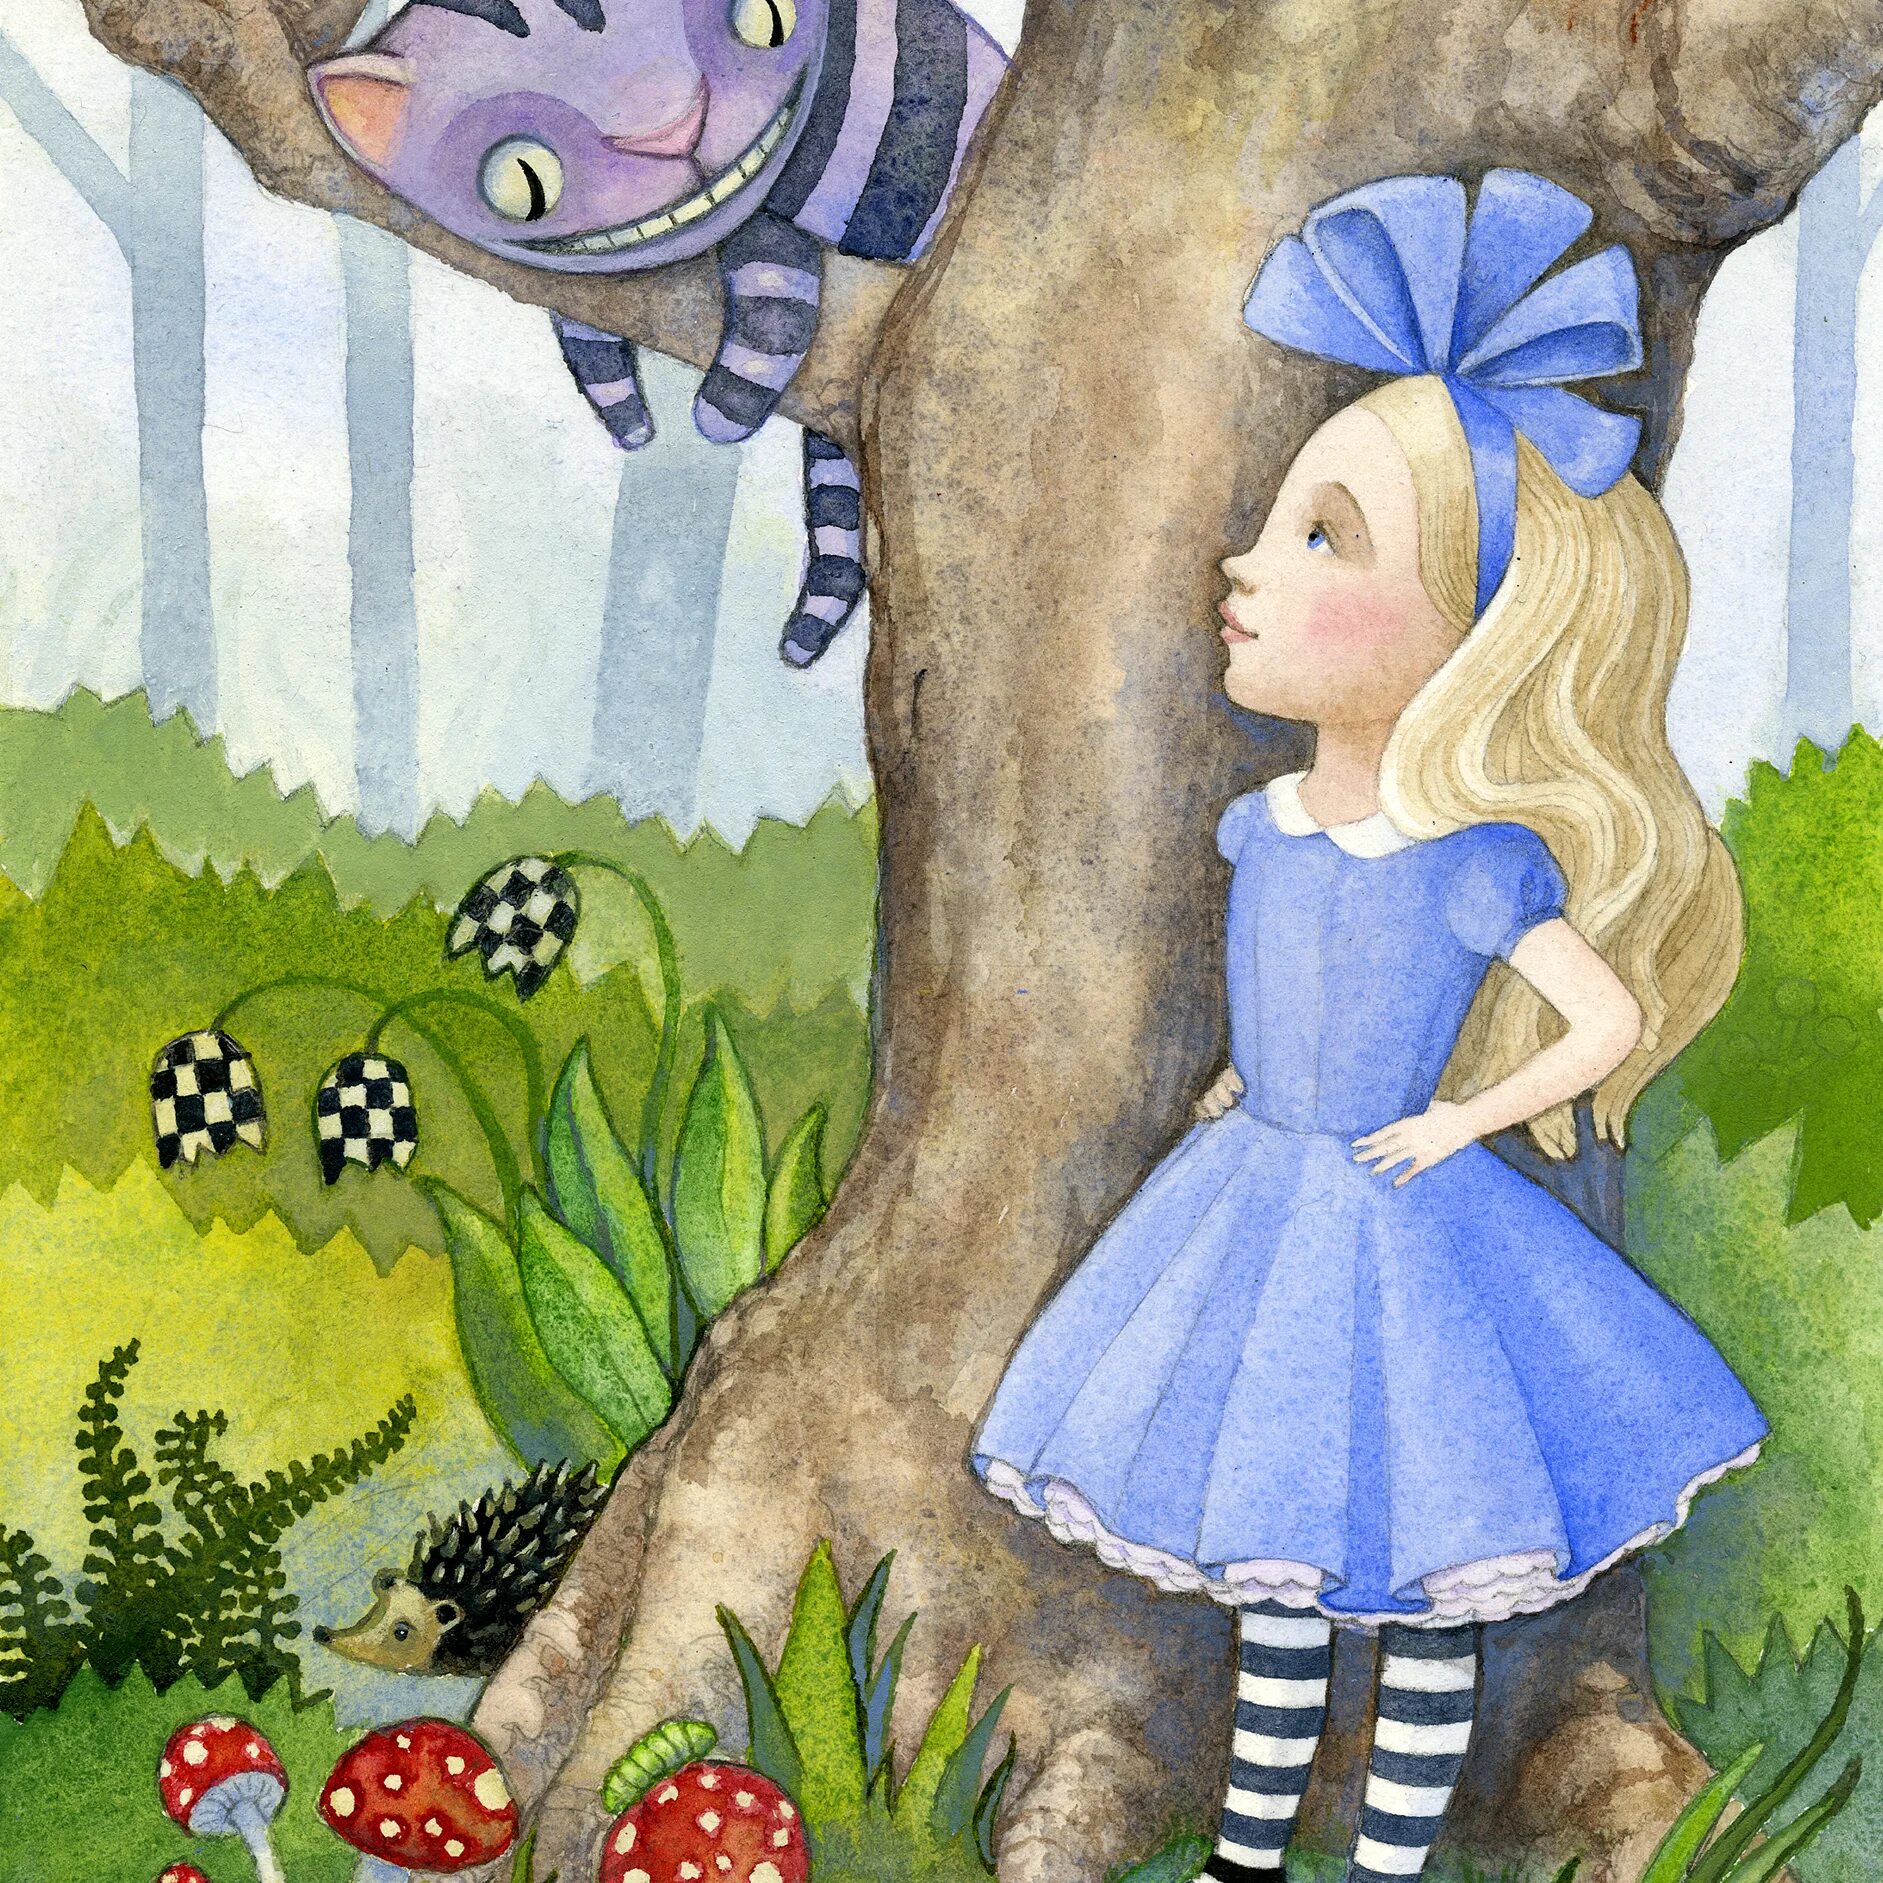 Чему учит сказка алиса в стране. Сказки как Алиса в стране чудес. Иллюстрация к сказке Алиса в стране чудес. Рисунок по книге Алиса в стране чудес. Алиса в стране чудес рисунок.